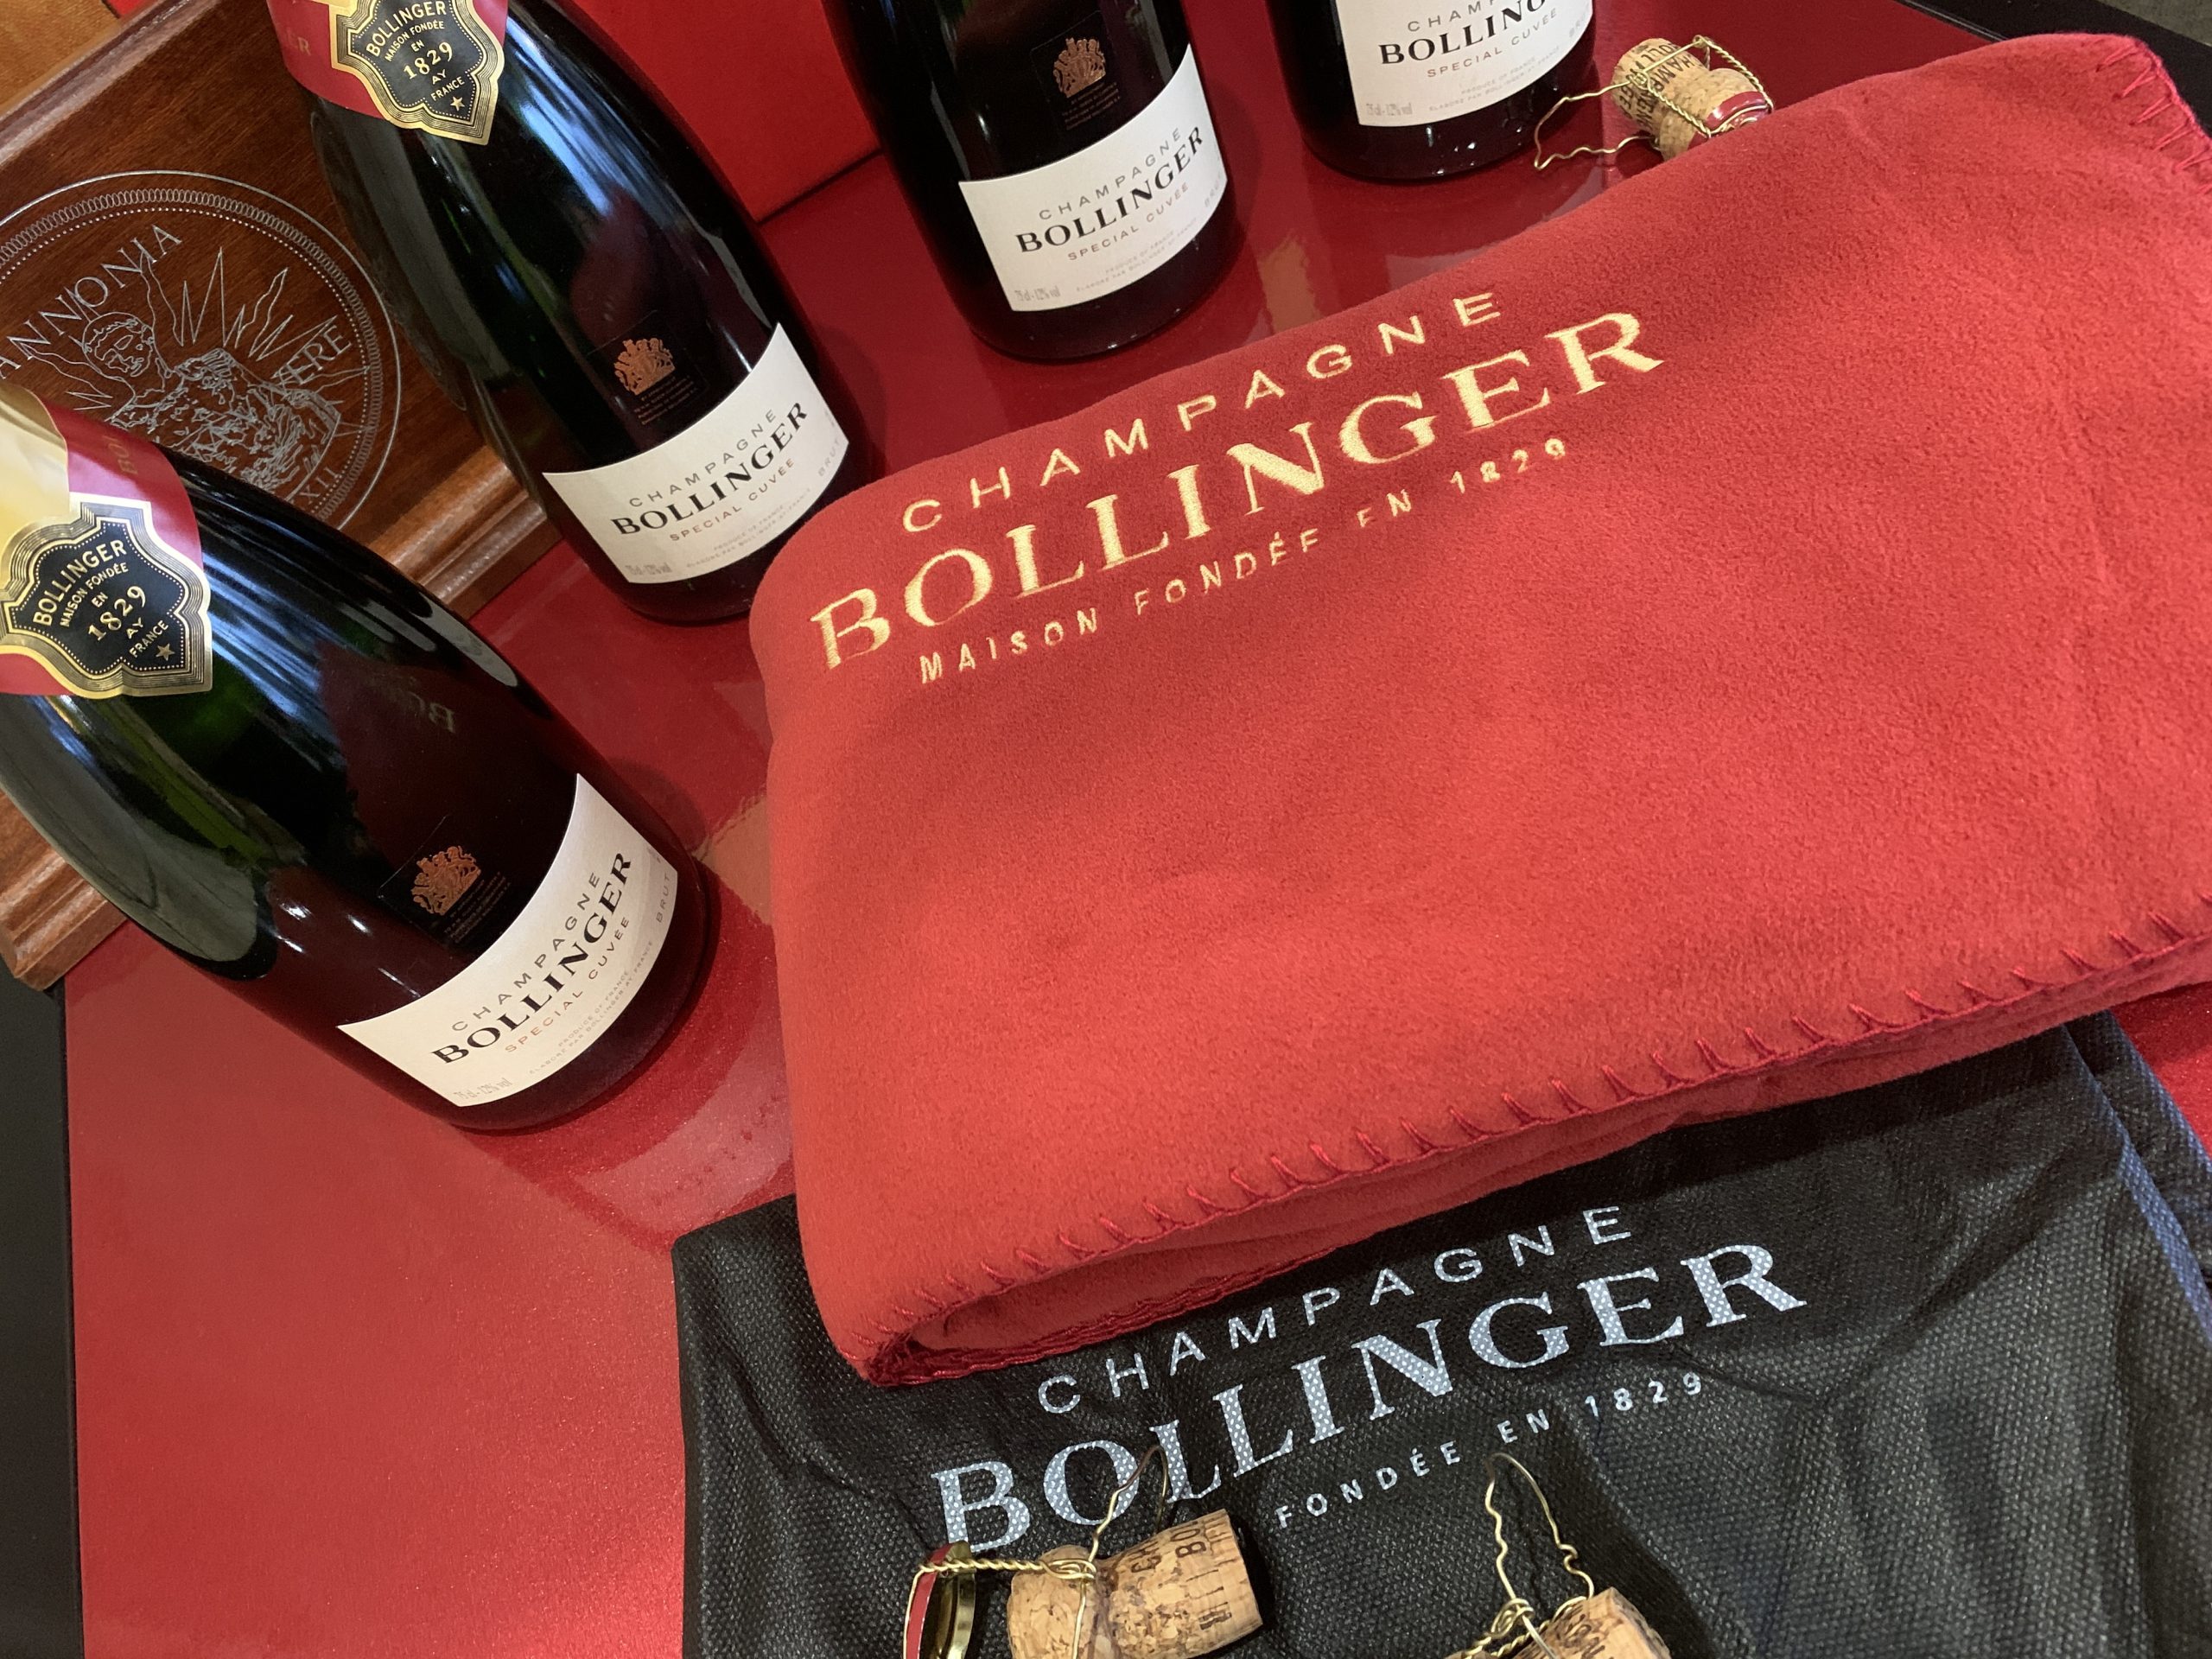 Piknik takaró – Champagne Bollinger Maison Fondée en 1829 takaró saját hordozózsákjában – 22.800.-Ft